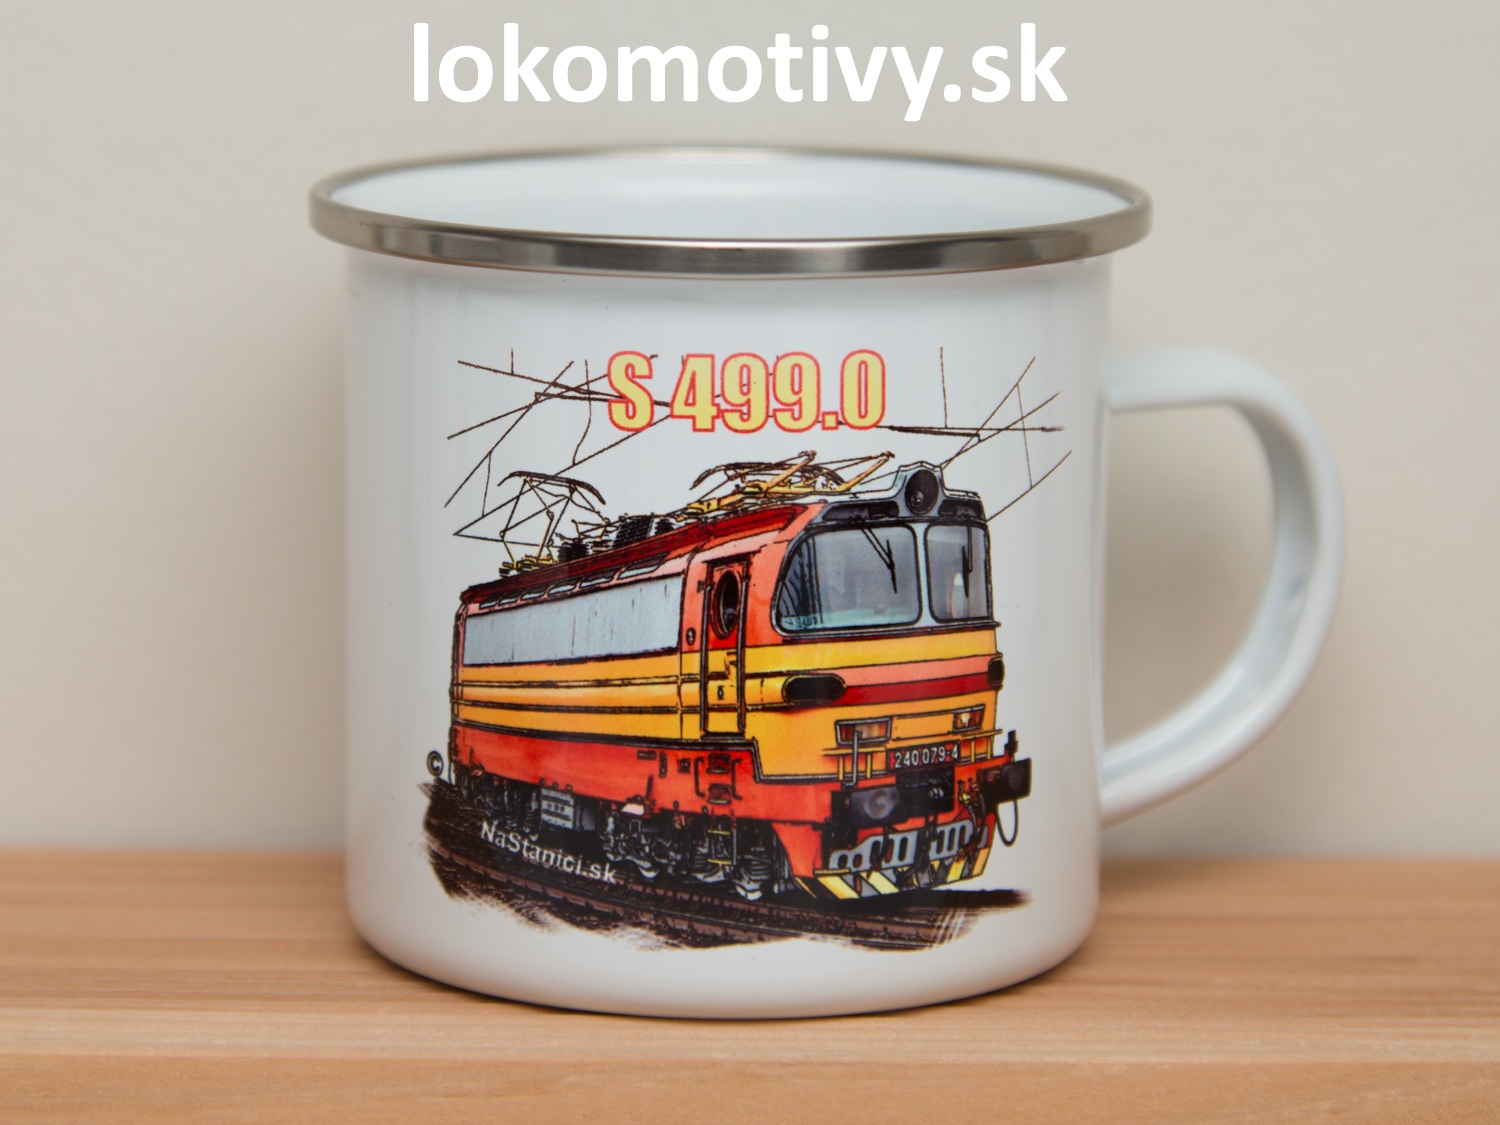 Plechový pohár s lokomotívou Laminatka S499.0